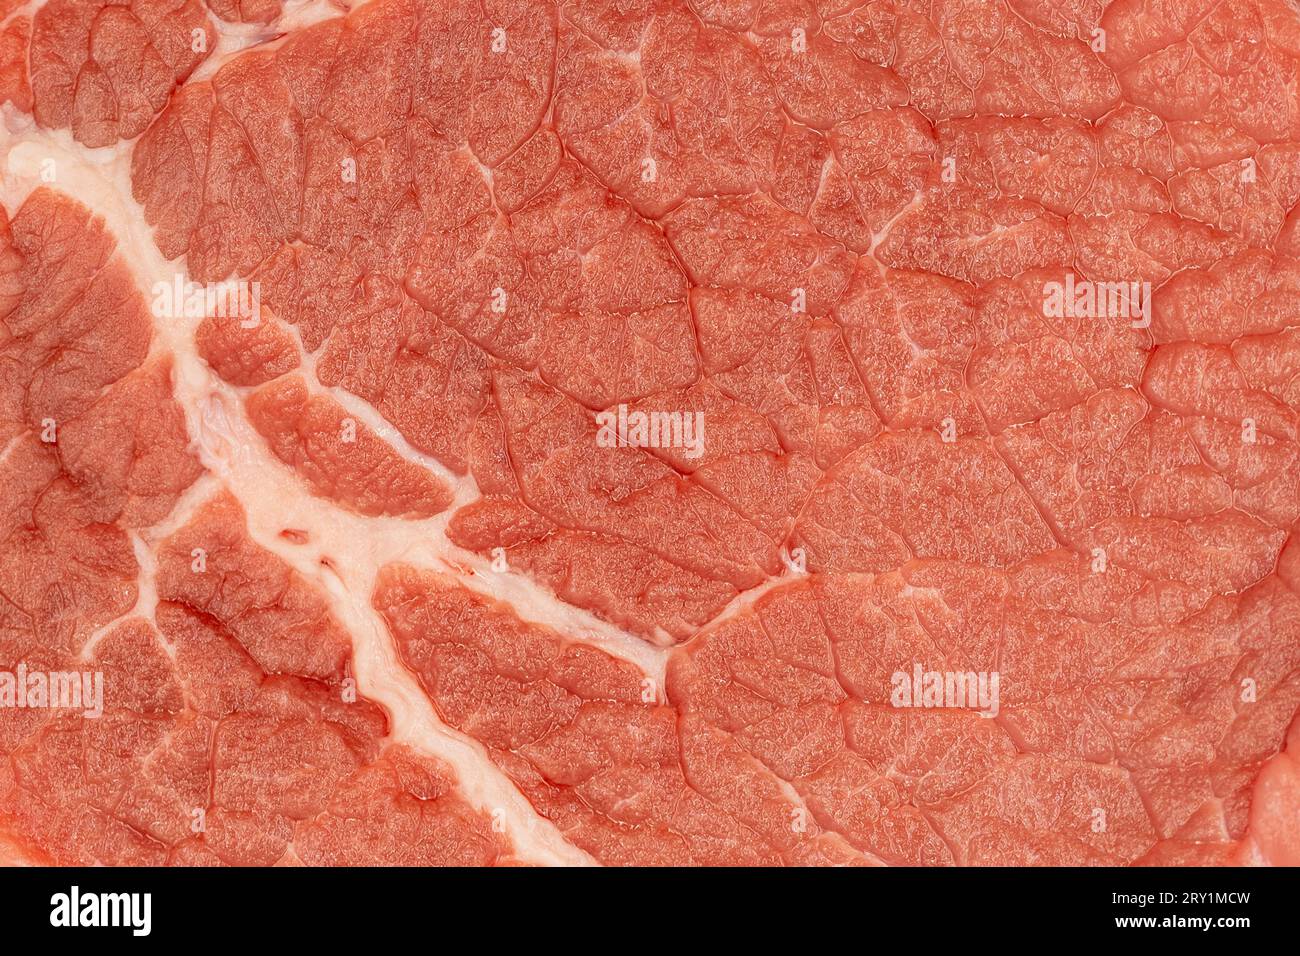 Texture de la viande. Gros plan de viande de bœuf et de tissu adipeux Banque D'Images